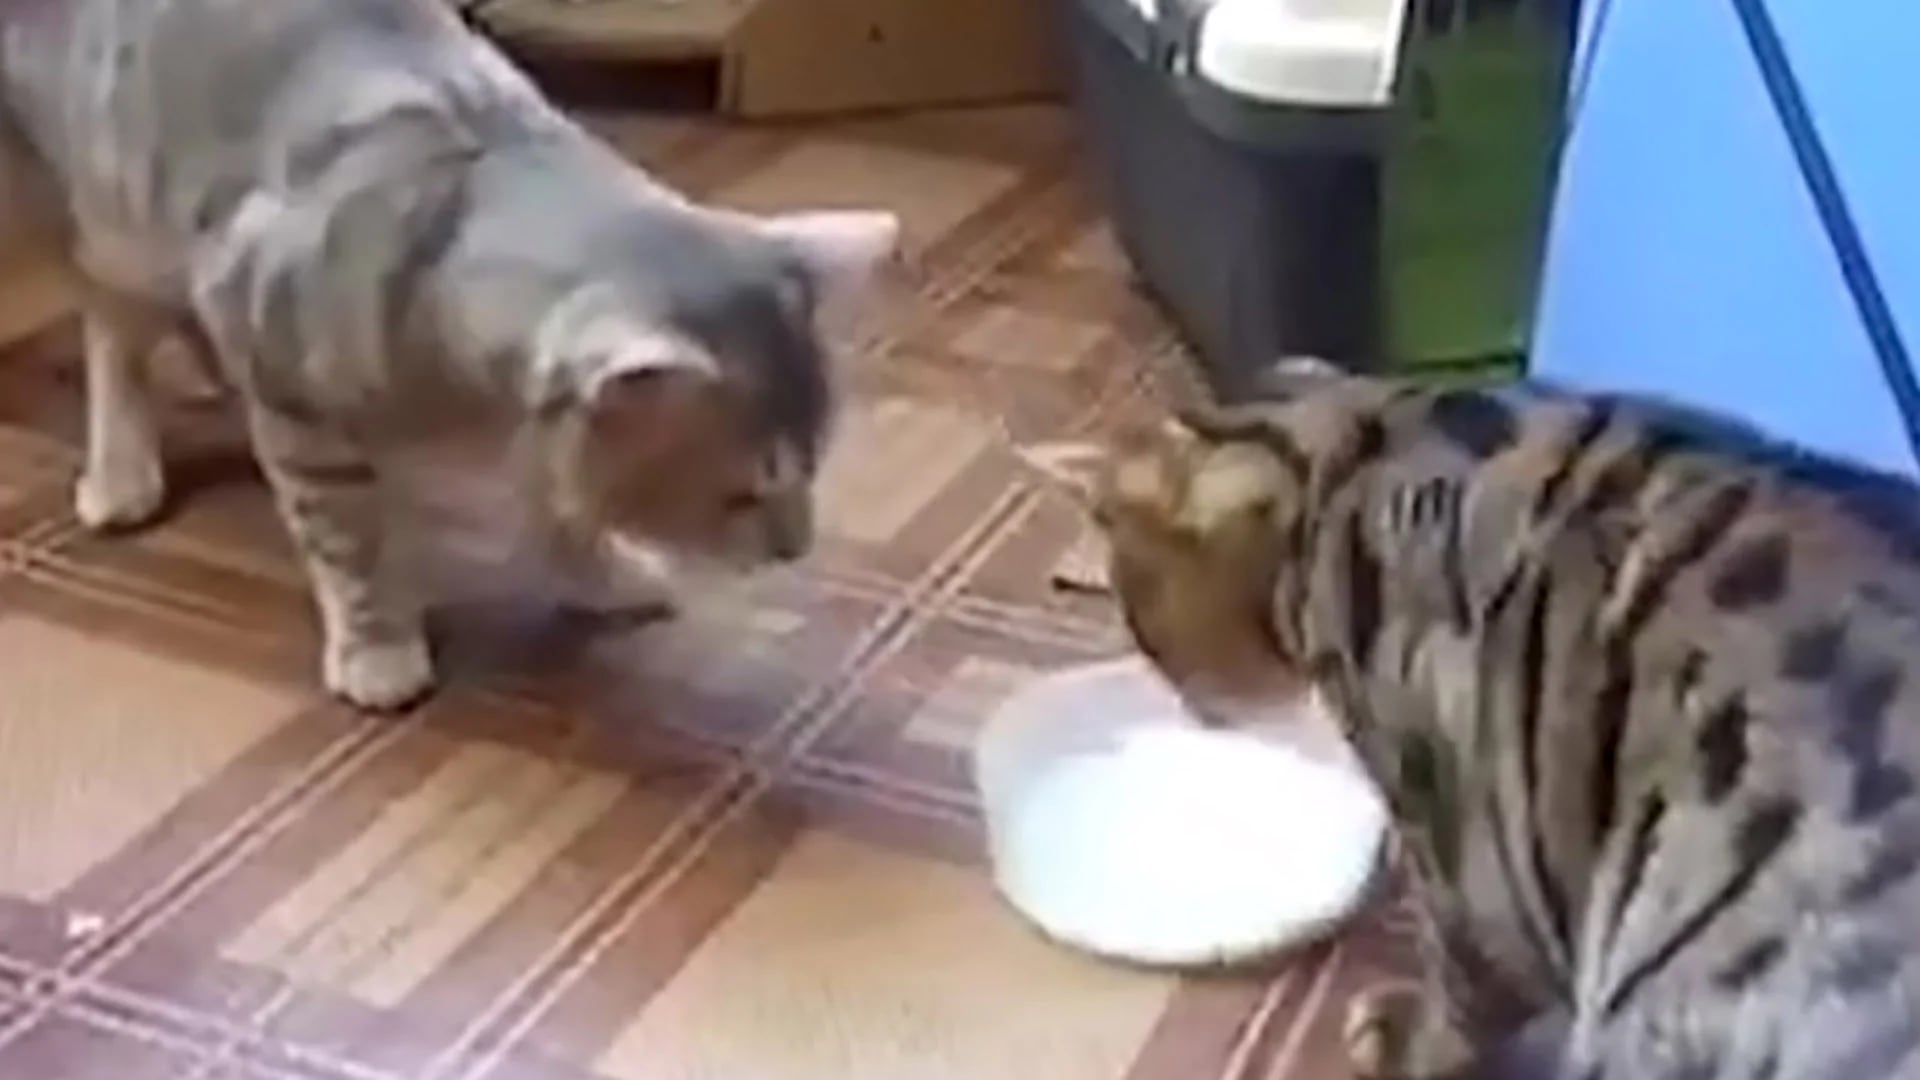 El video muestra la divertida escena de dos gatos disputándose por el delicioso tazón de leche